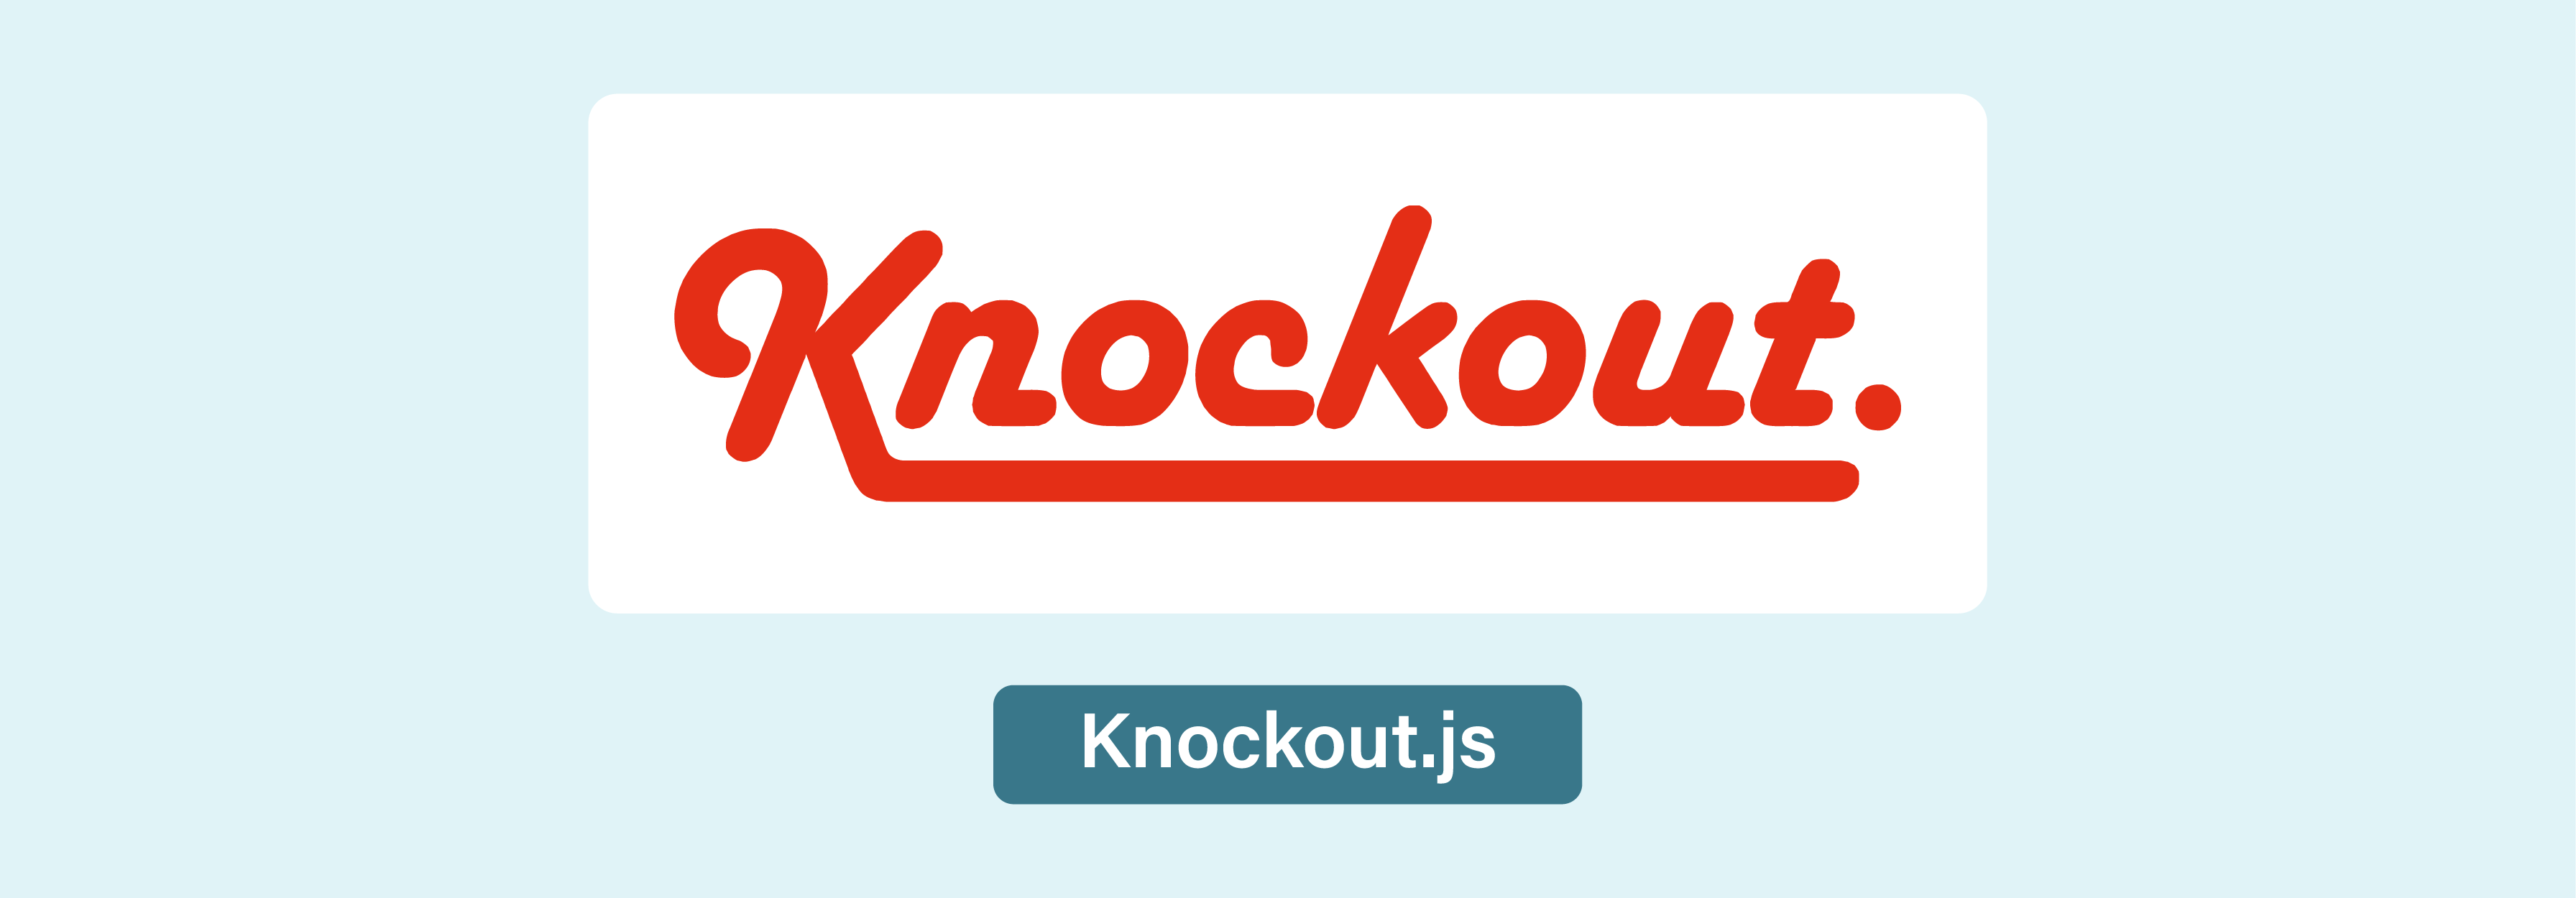 Knockout.js